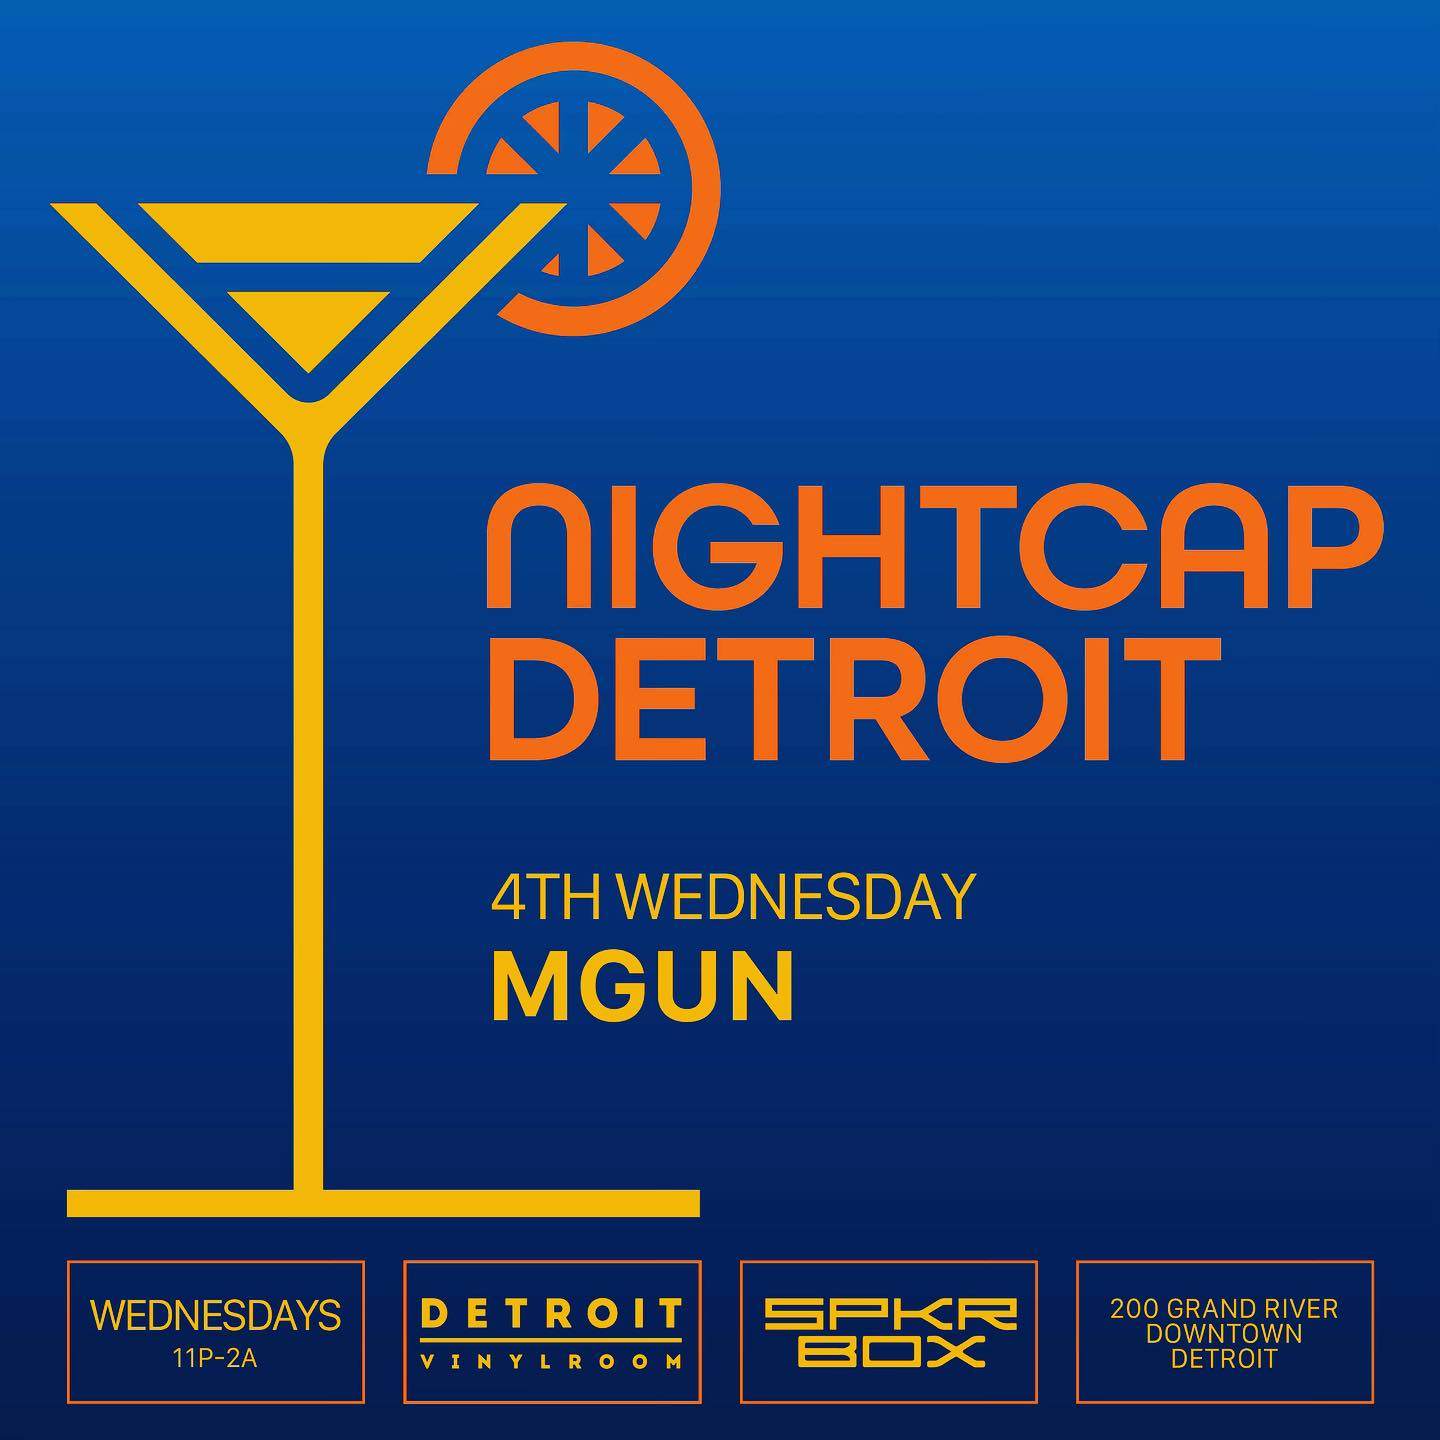 Nightcap Detroit with MGUN - フライヤー表